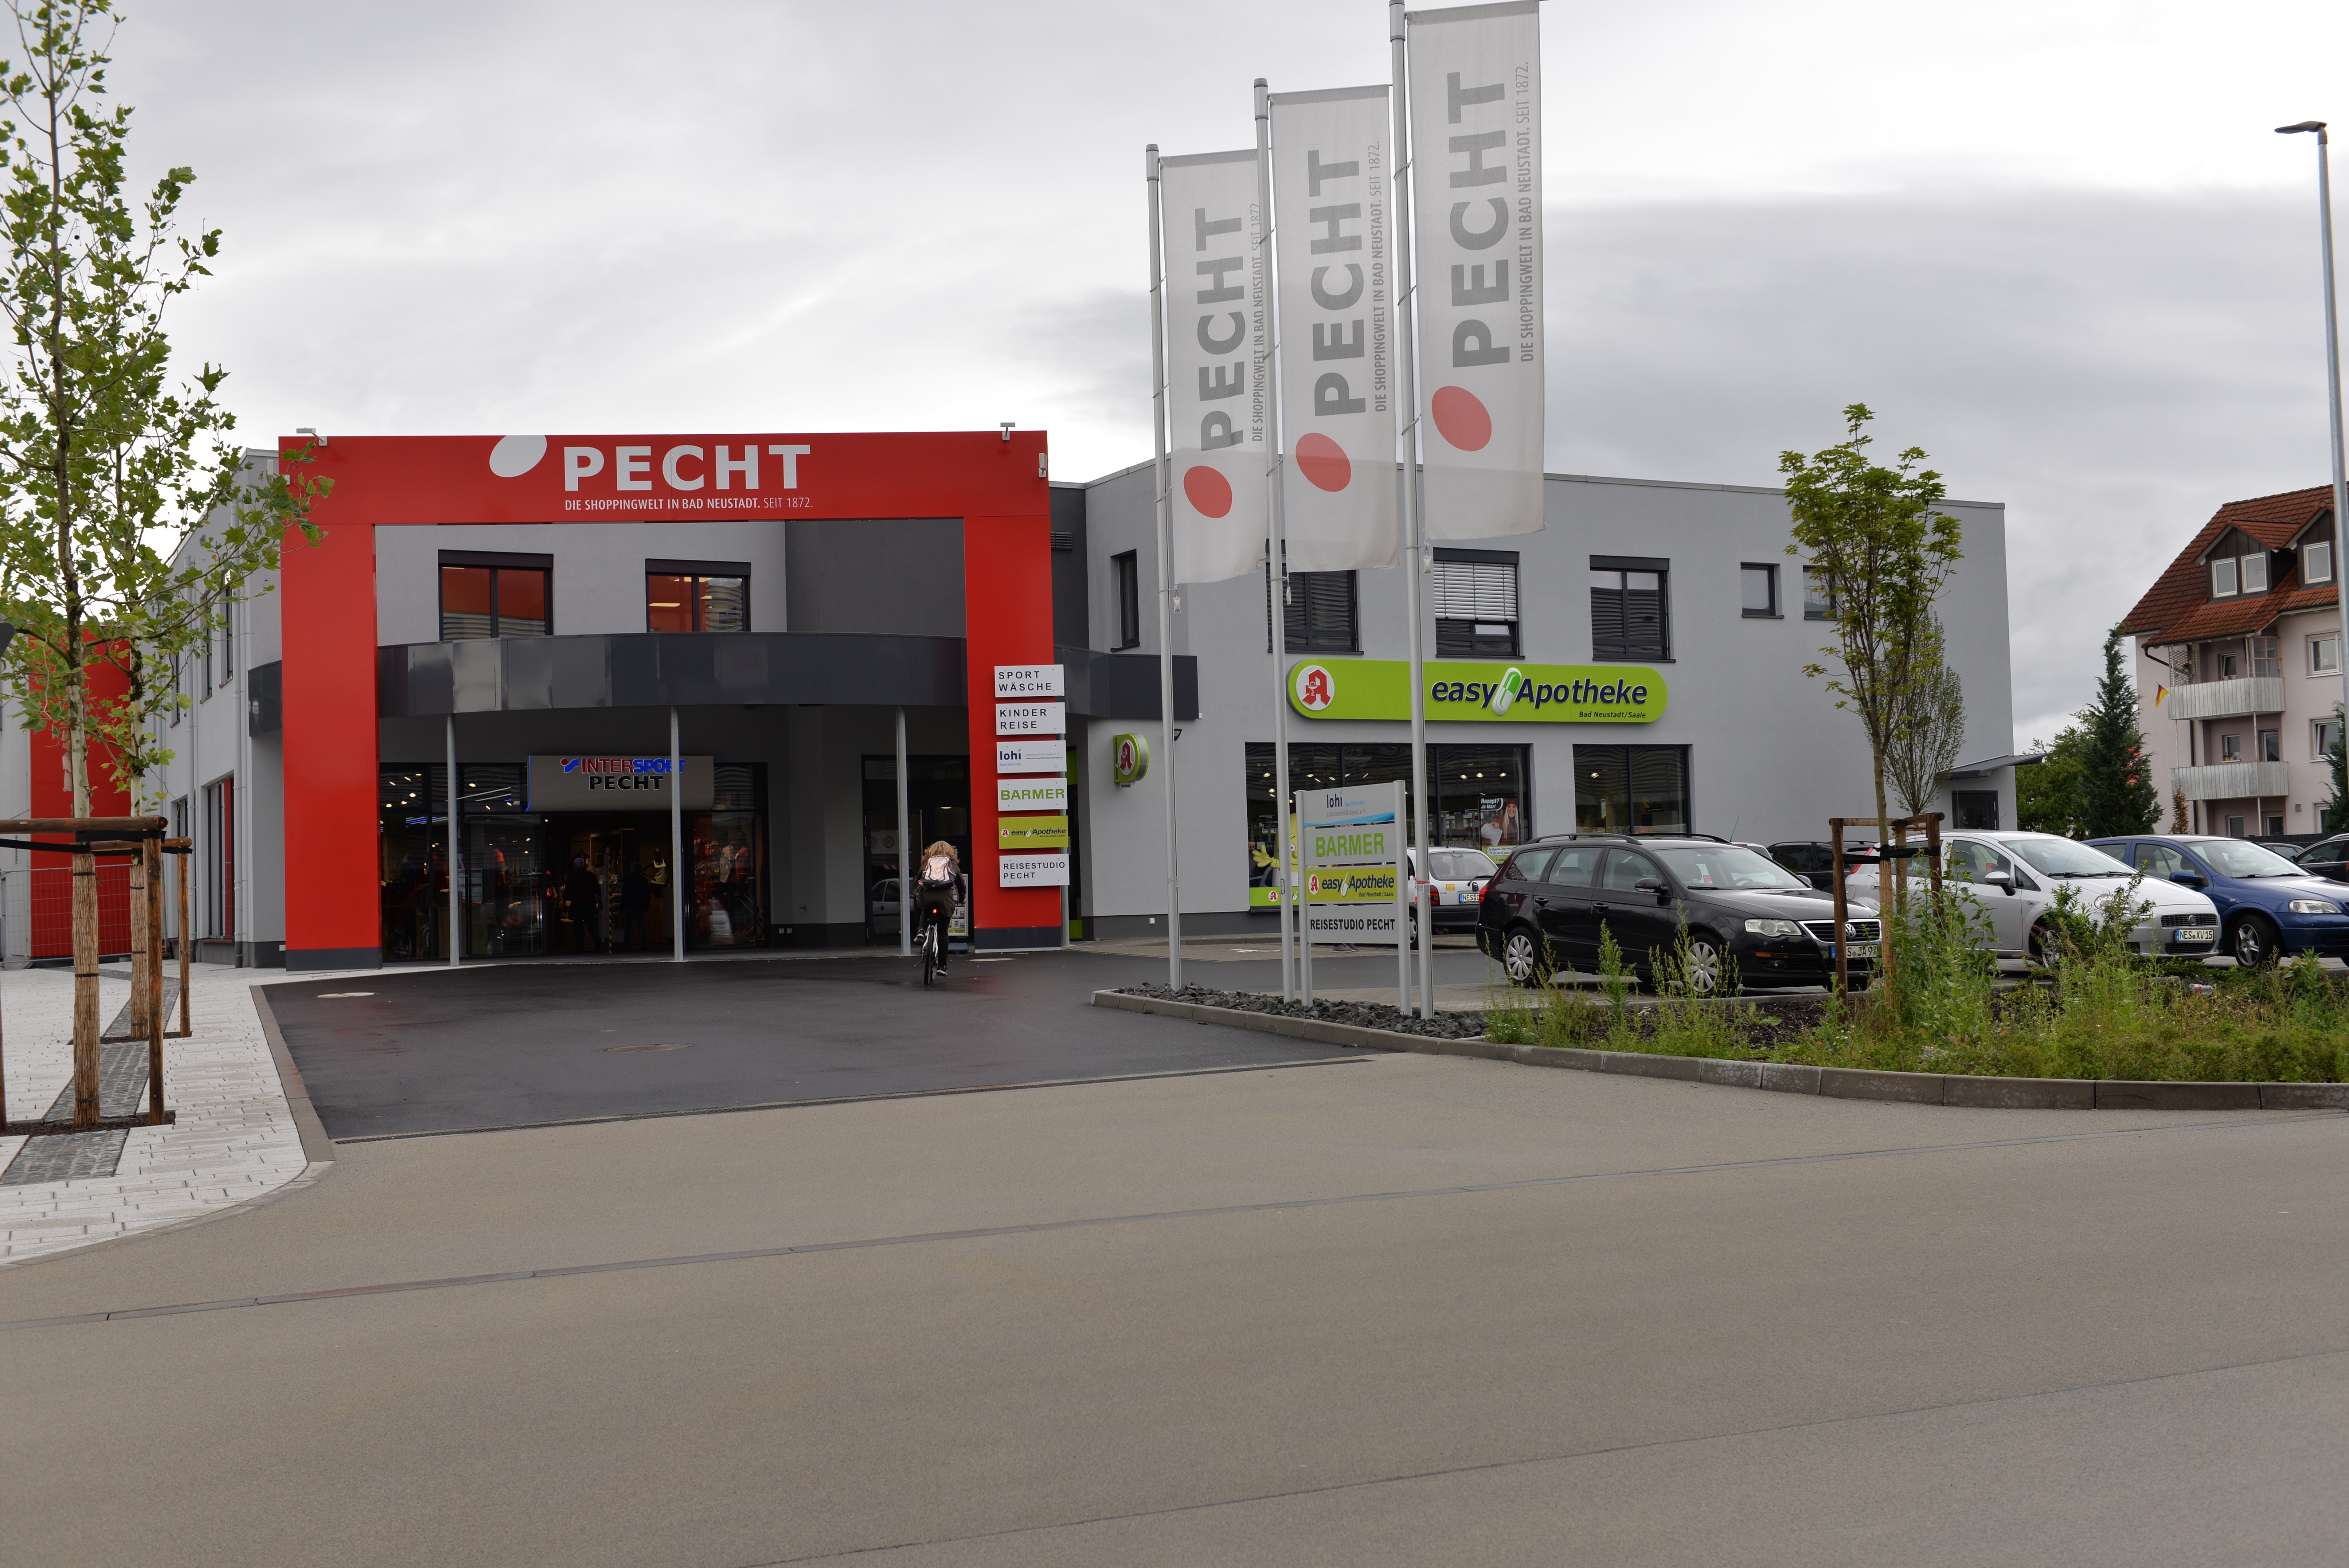 Bild 21 PECHT Shoppingwelt - Einkaufszentrum in Bad Neustadt in Bad Neustadt an der Saale